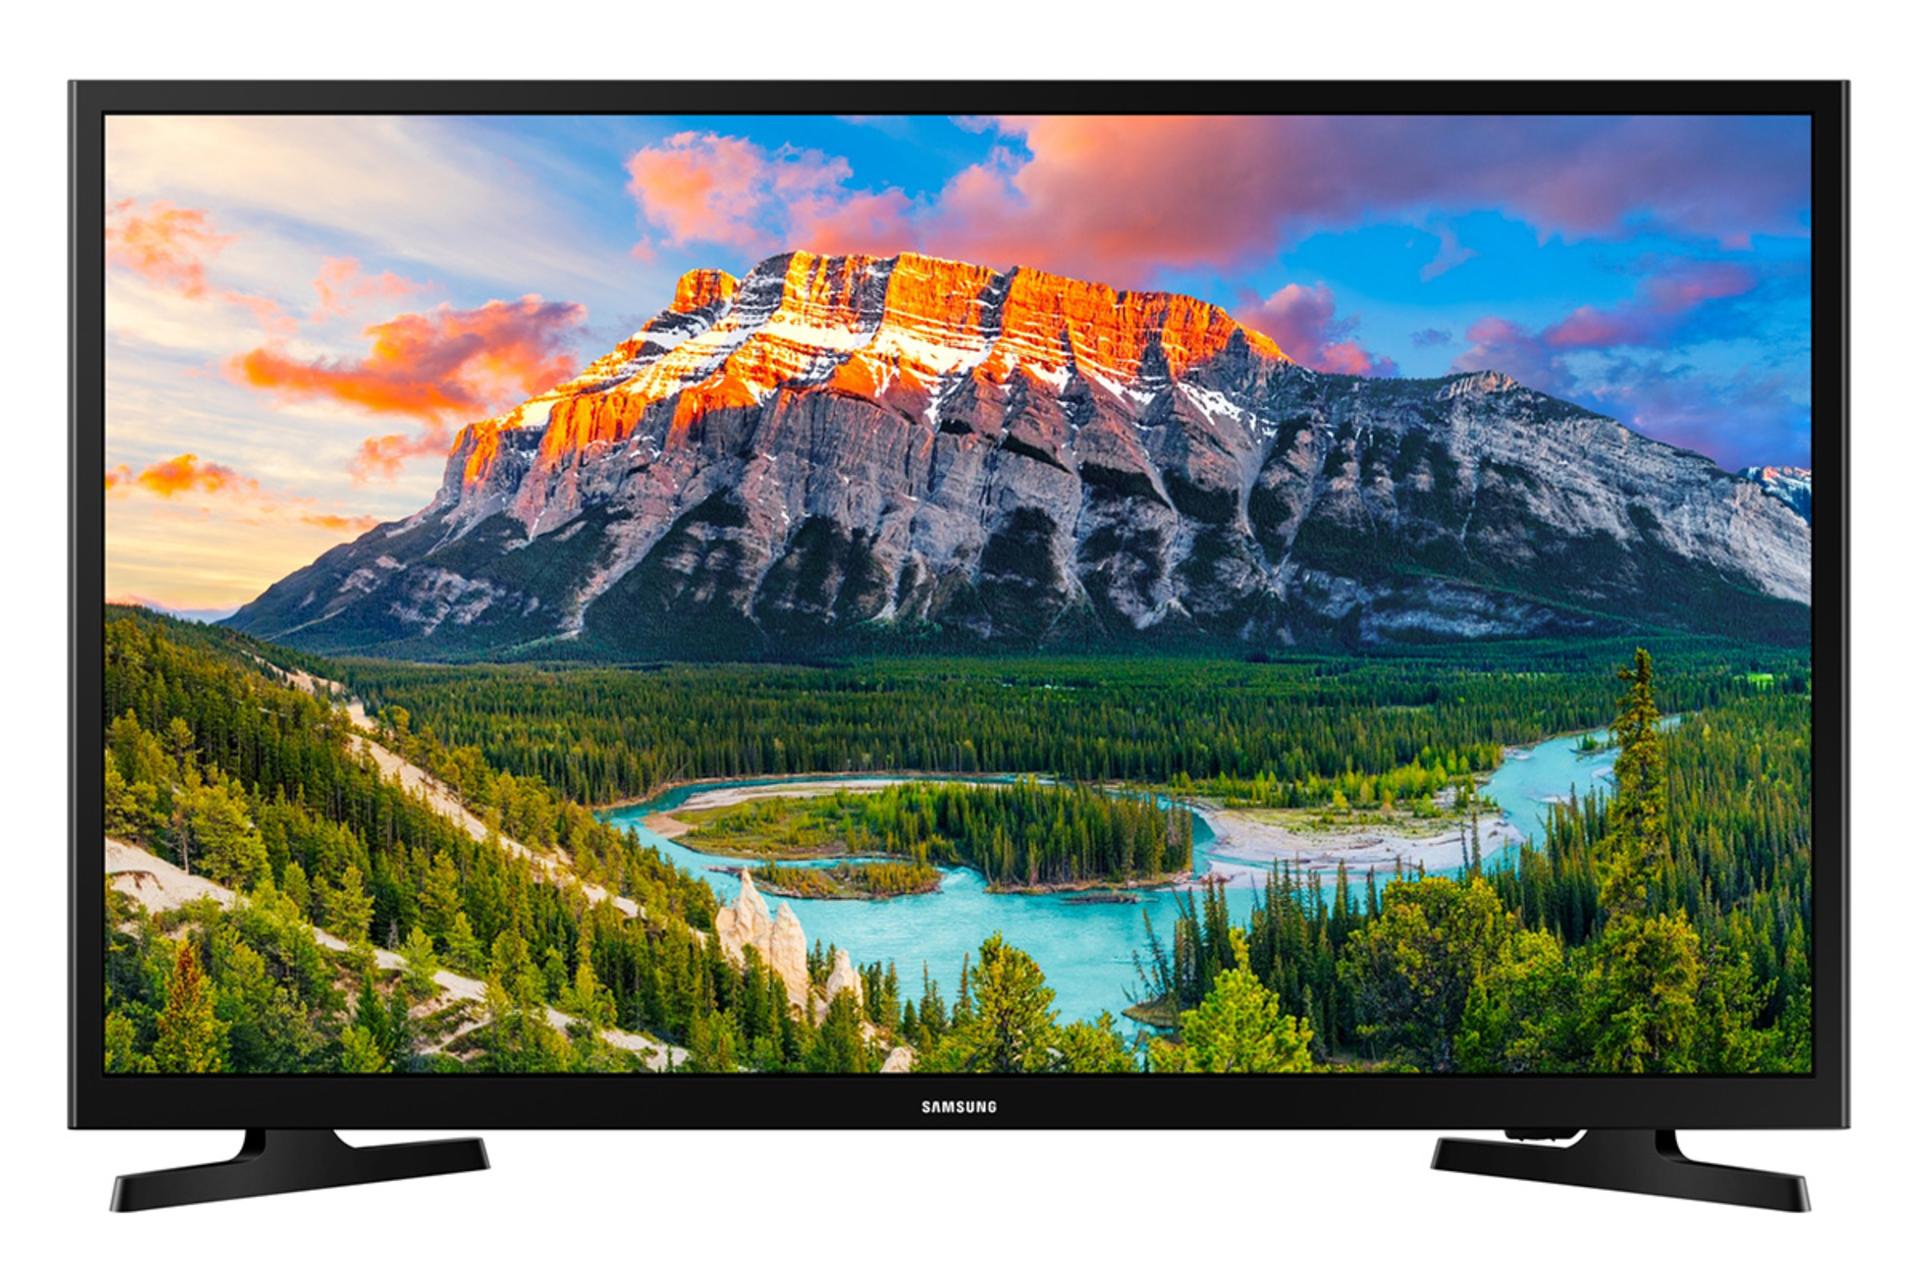 نمای جلو تلویزیون سامسونگ N5300 مدل 32 اینچ با صفحه روشن